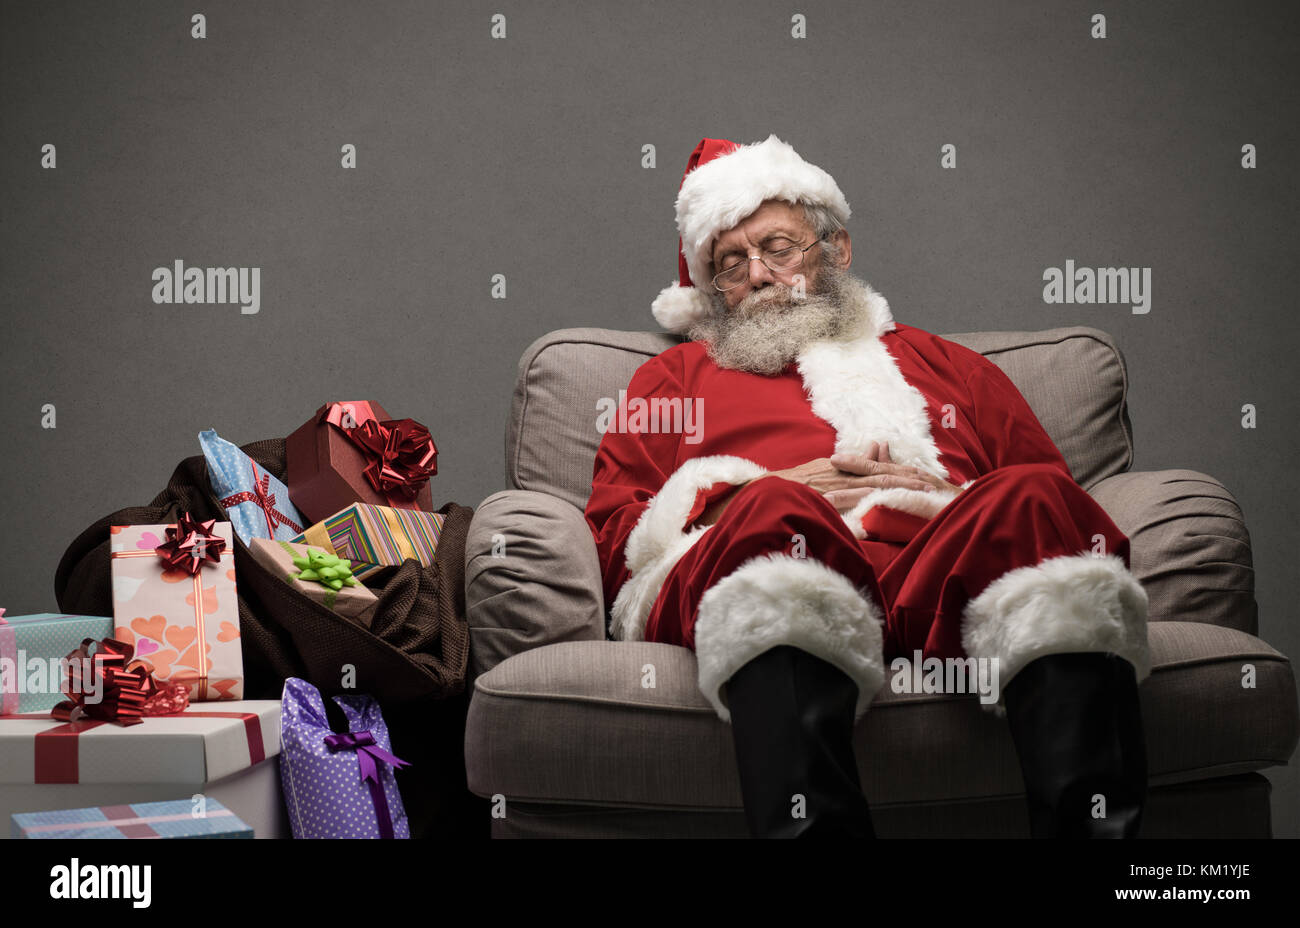 Sleepy santa claus prendre une sieste et reposant sur le fauteuil la veille de Noël Banque D'Images